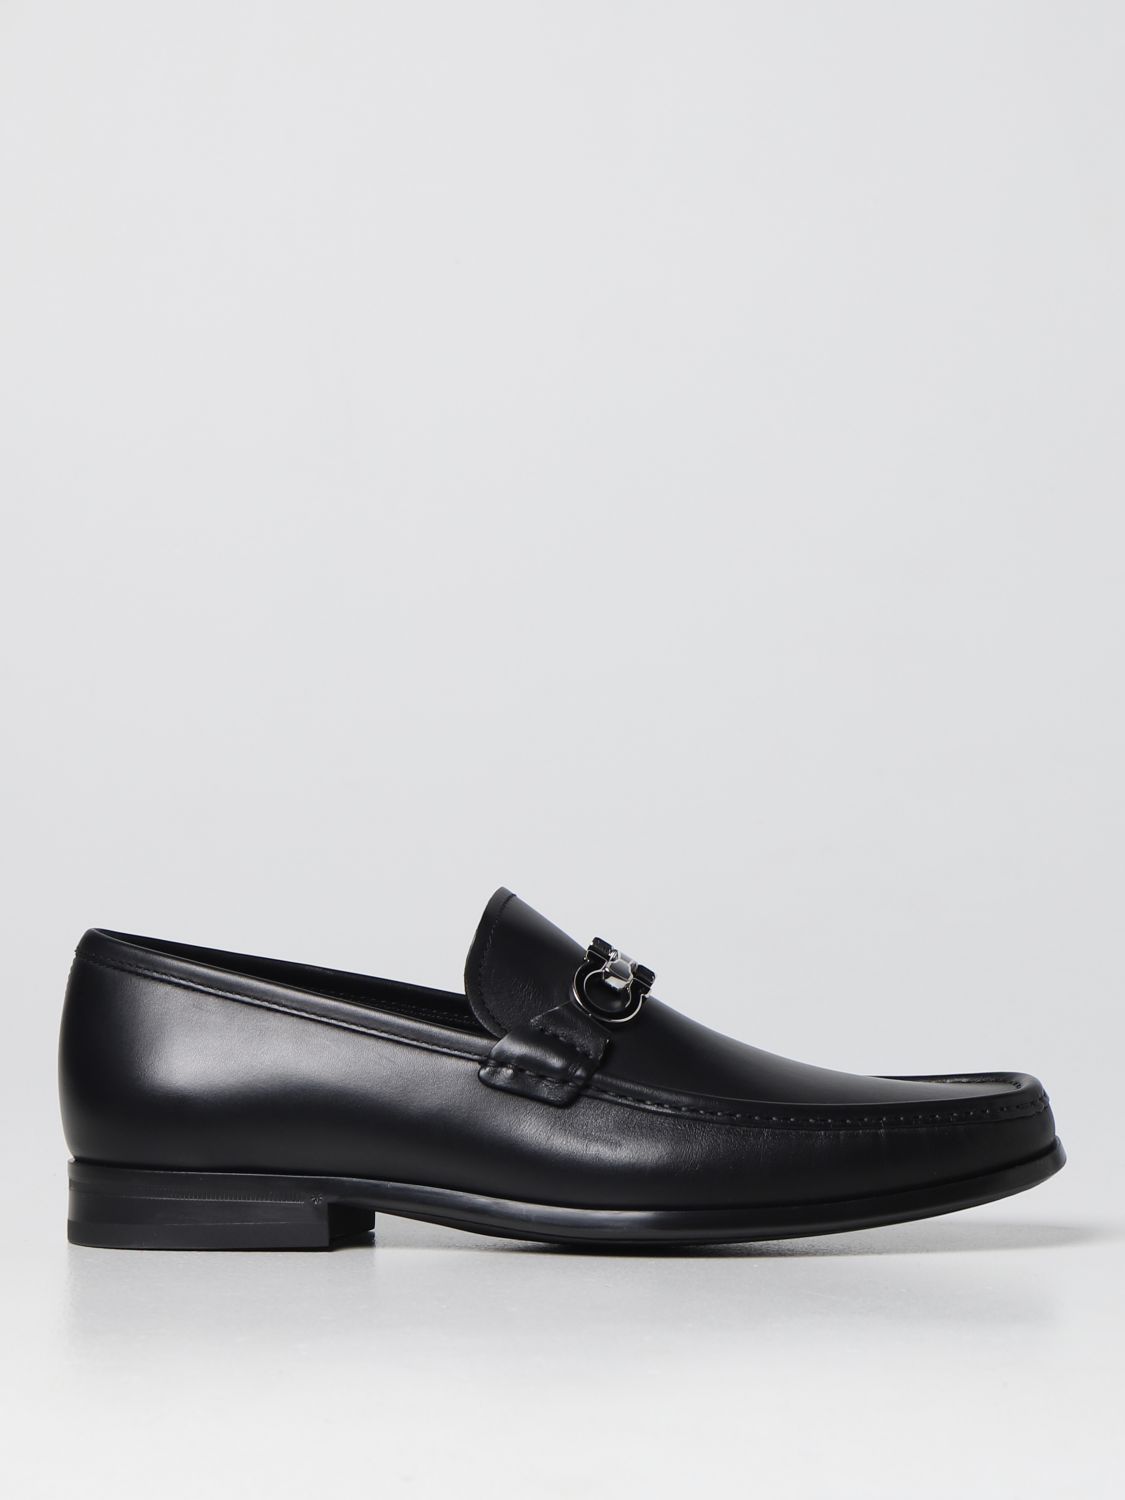 FERRAGAMO: Salvatore leather loafers - Black | Ferragamo loafers 02A881 ...